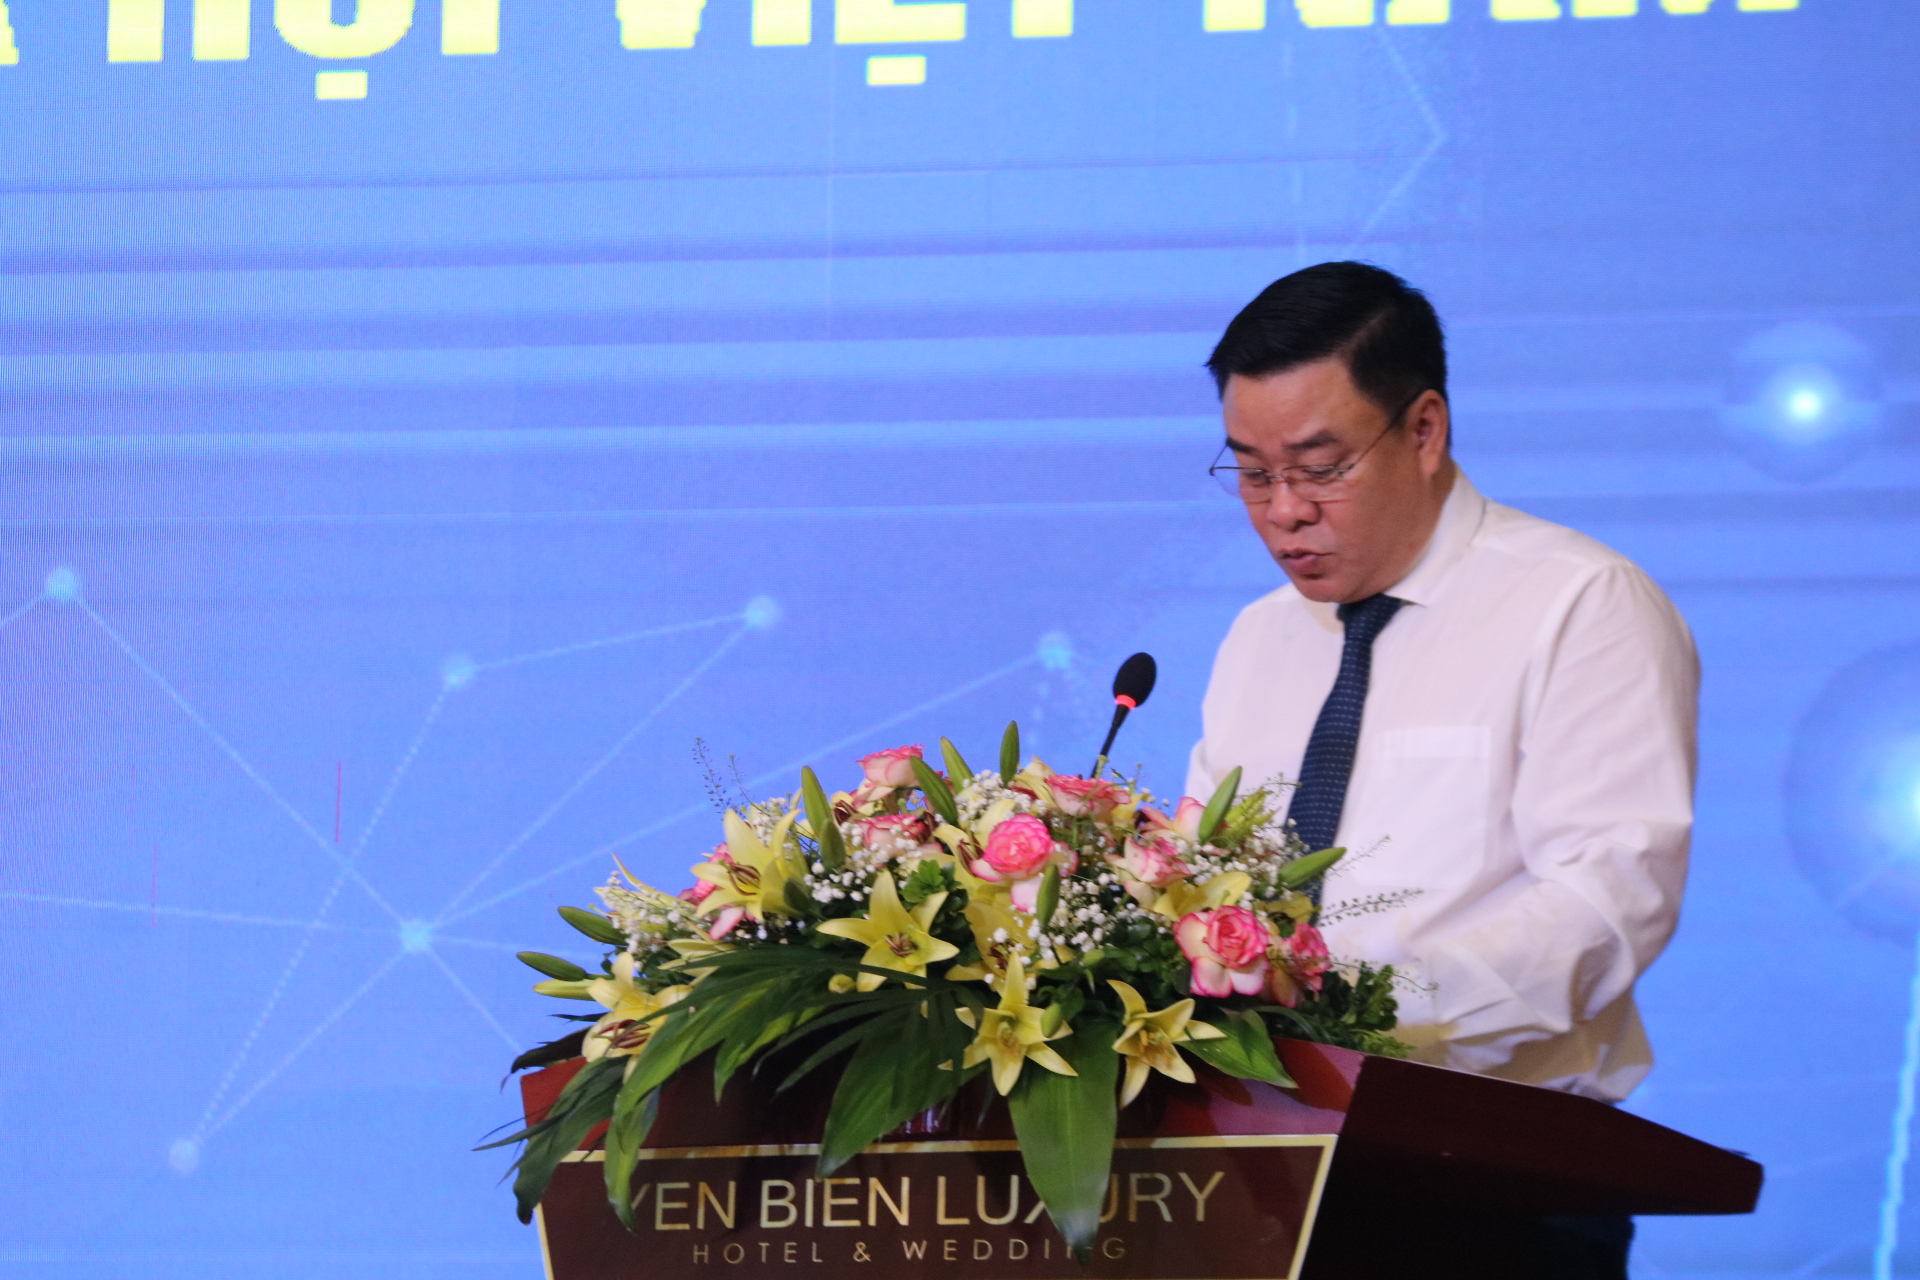 Sáng tạo khoa học công nghệ thúc đẩy phát triển kinh tế - xã hội Việt Nam - Ảnh 3.